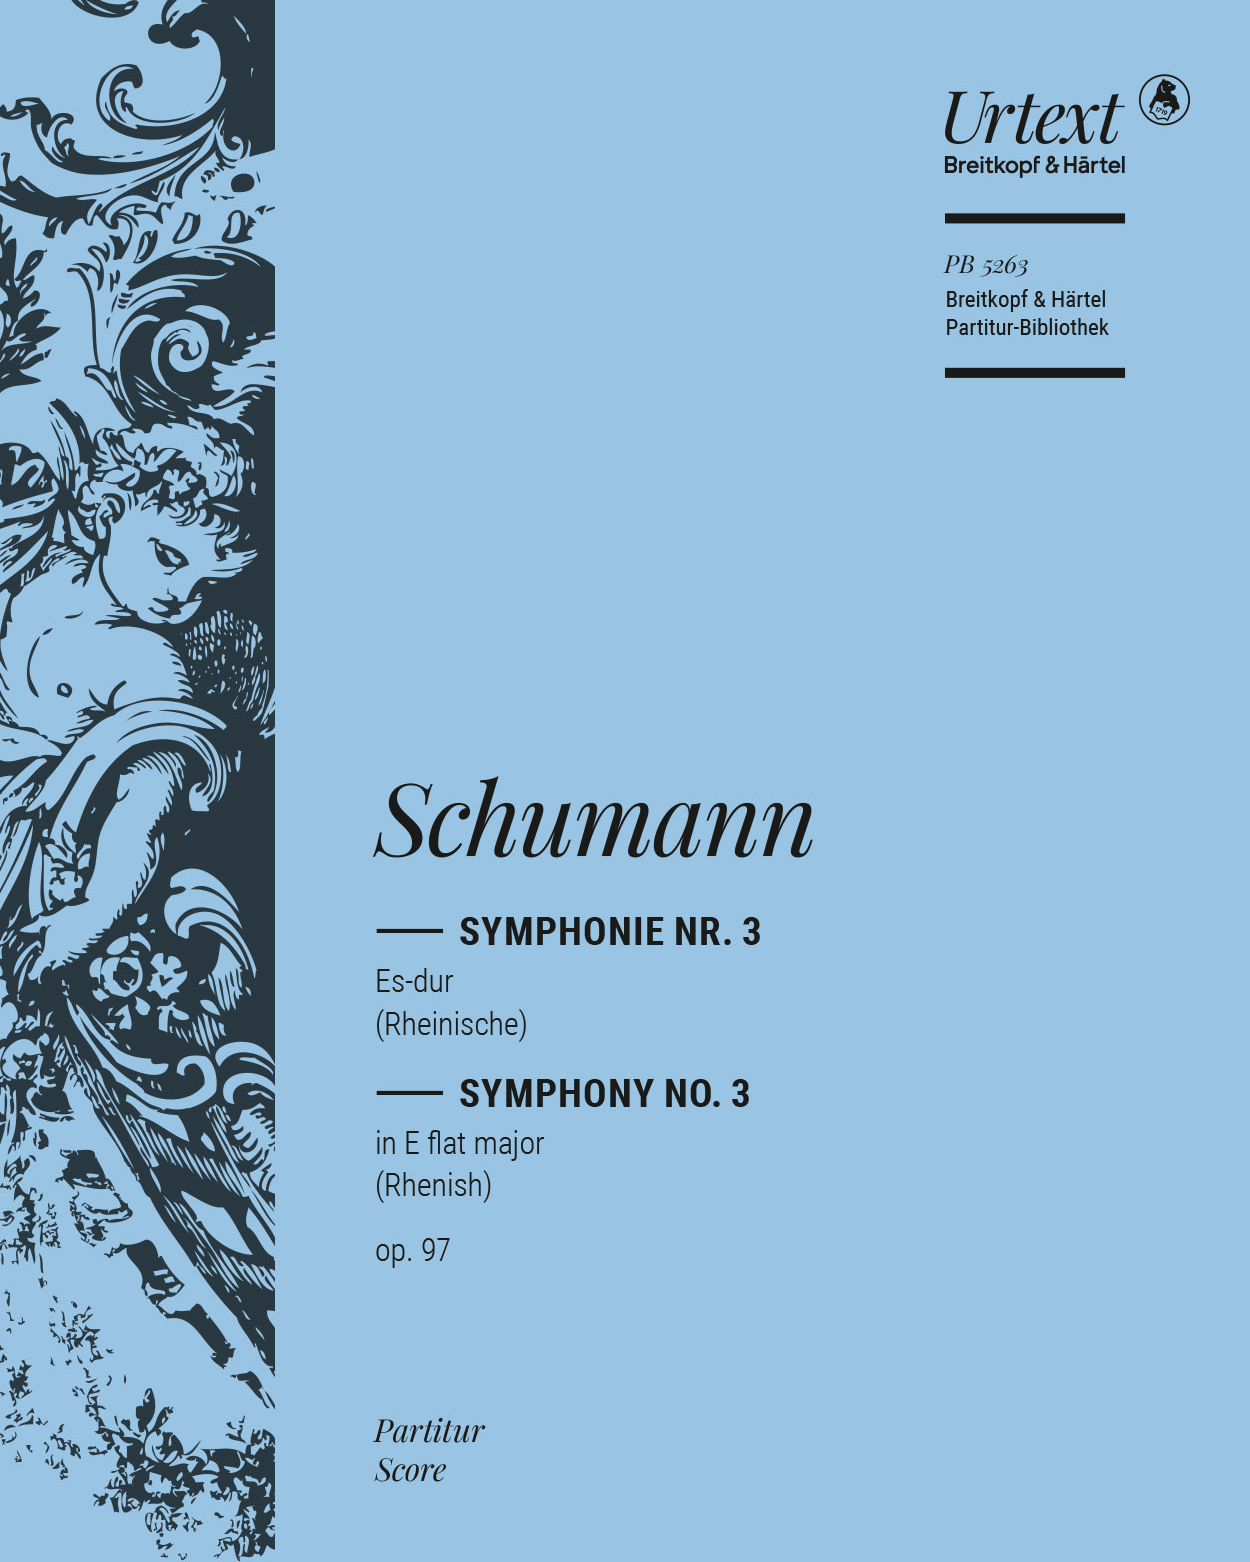 Symphonie Nr. 3 Es-dur op. 97